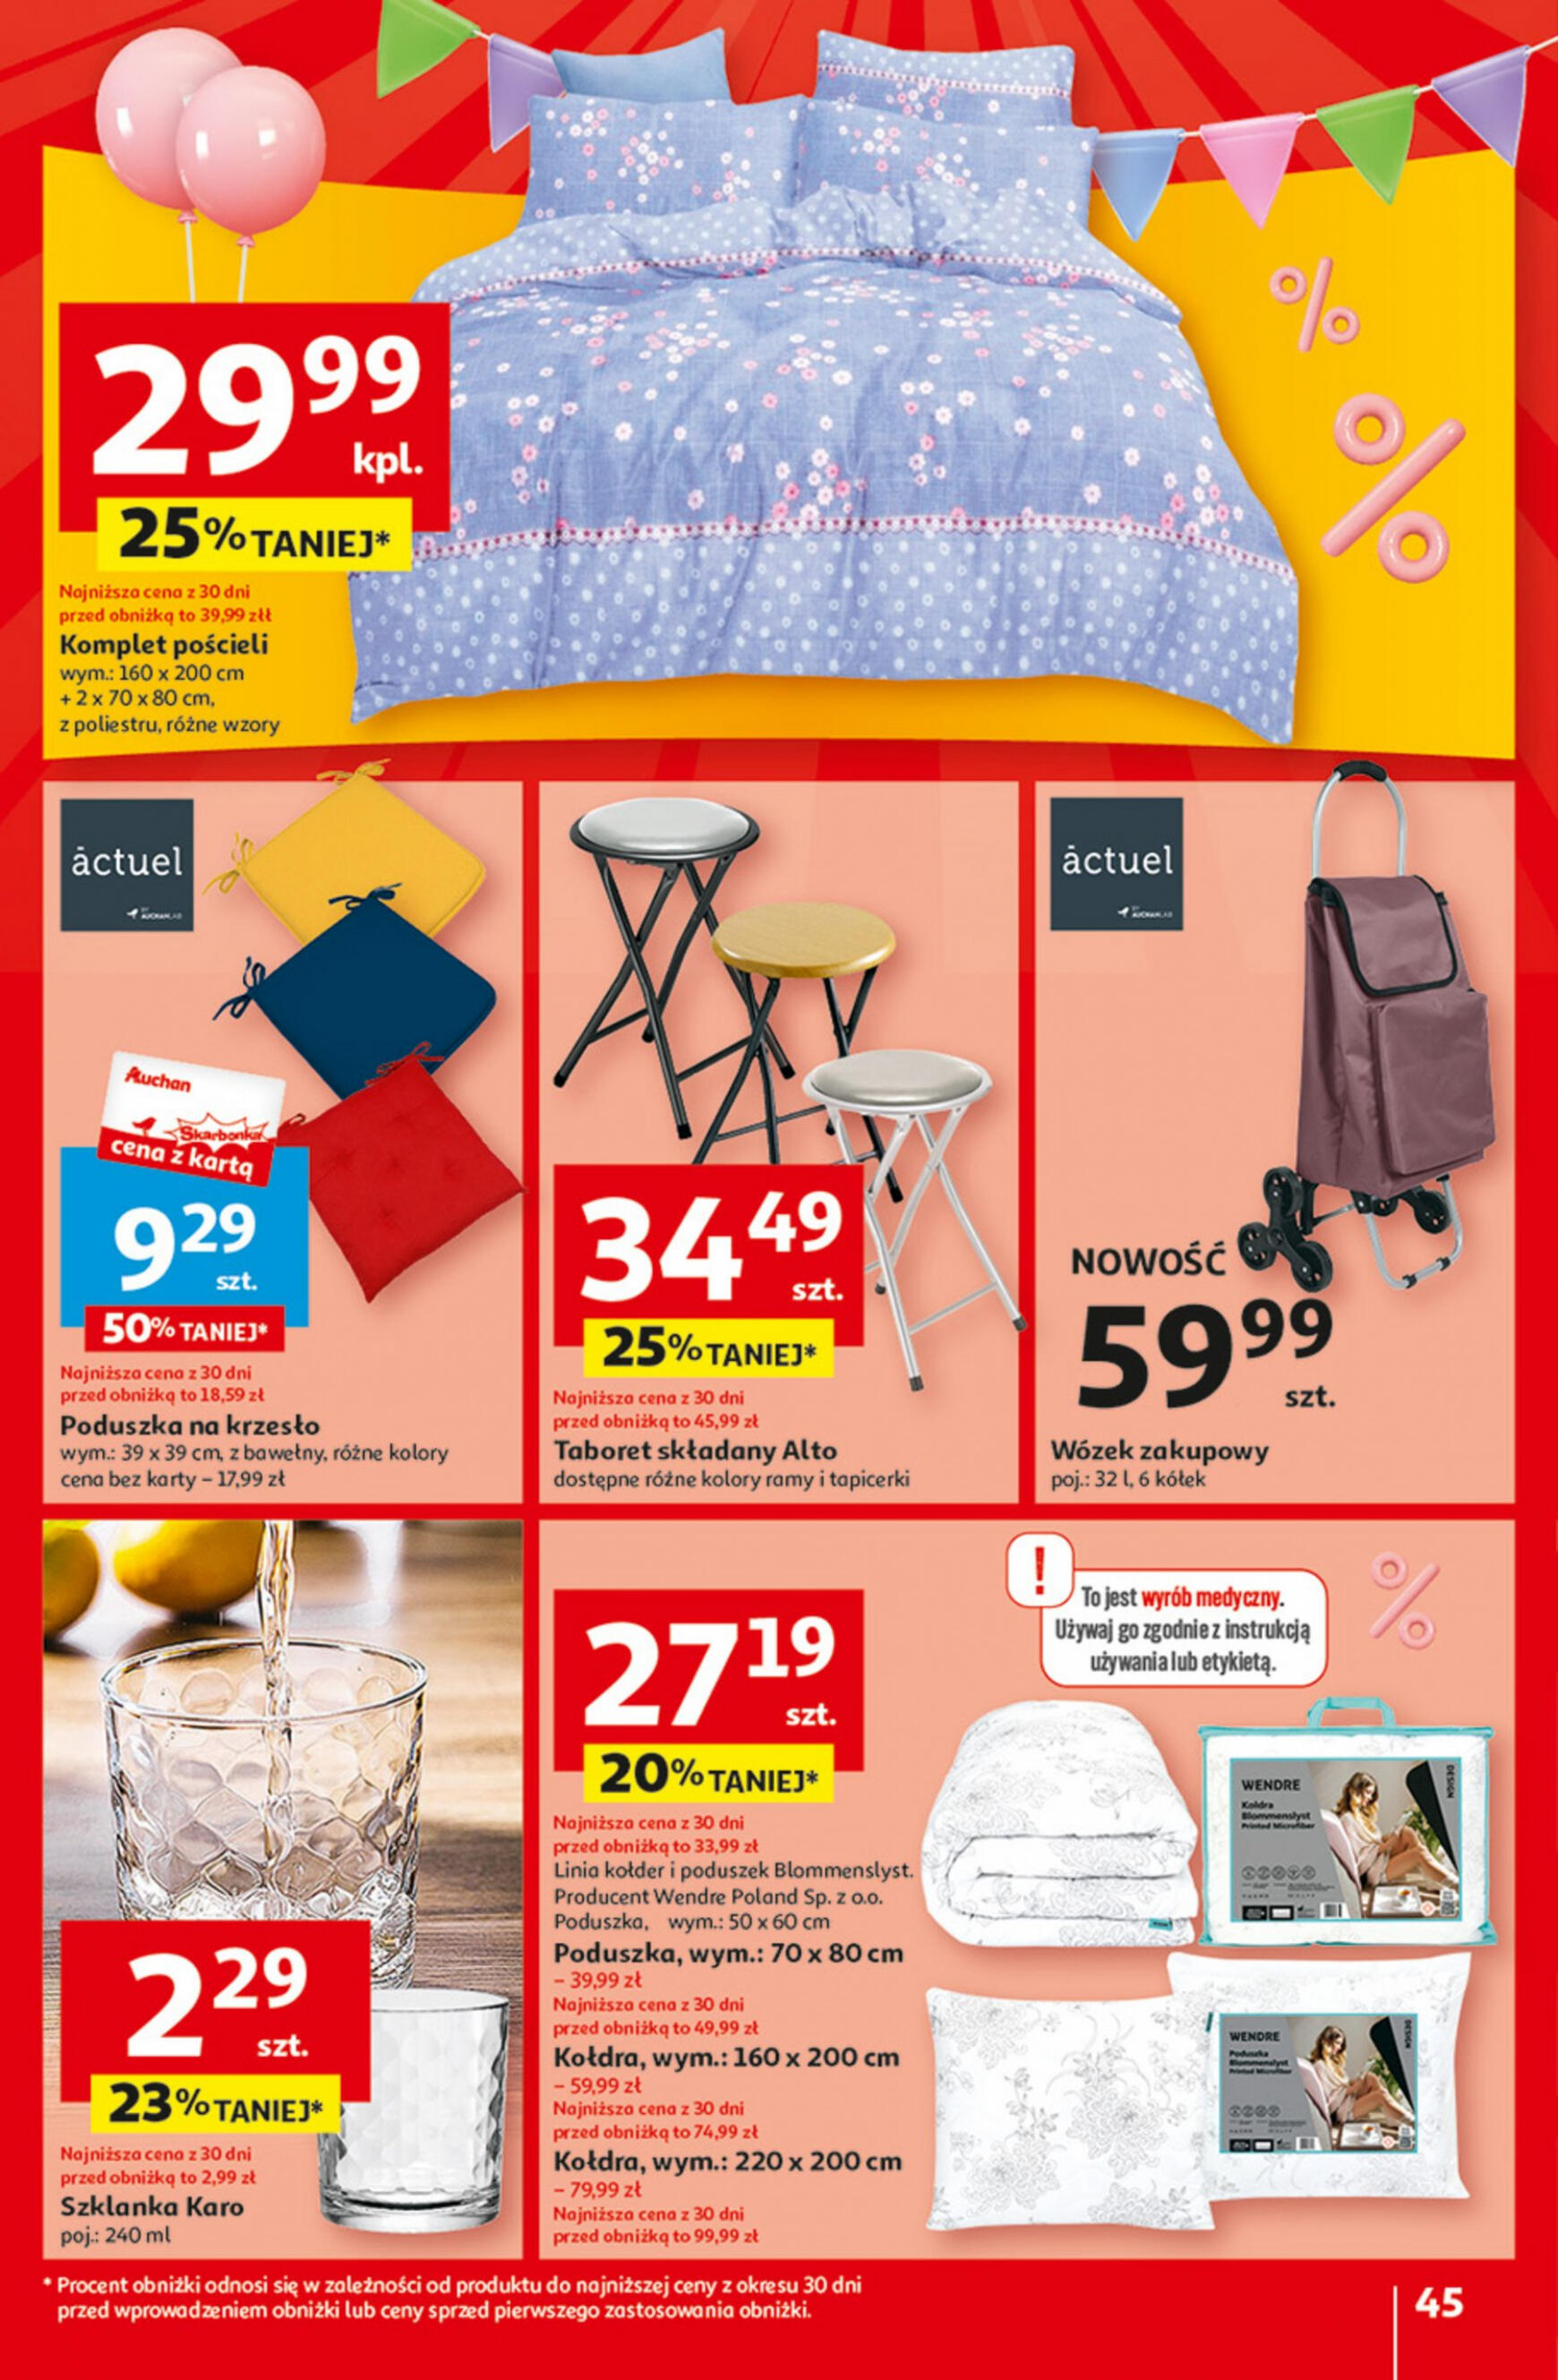 auchan - Hipermarket Auchan - Gazetka Jeszcze taniej na urodziny gazetka aktualna ważna od 09.05. - 15.05. - page: 45